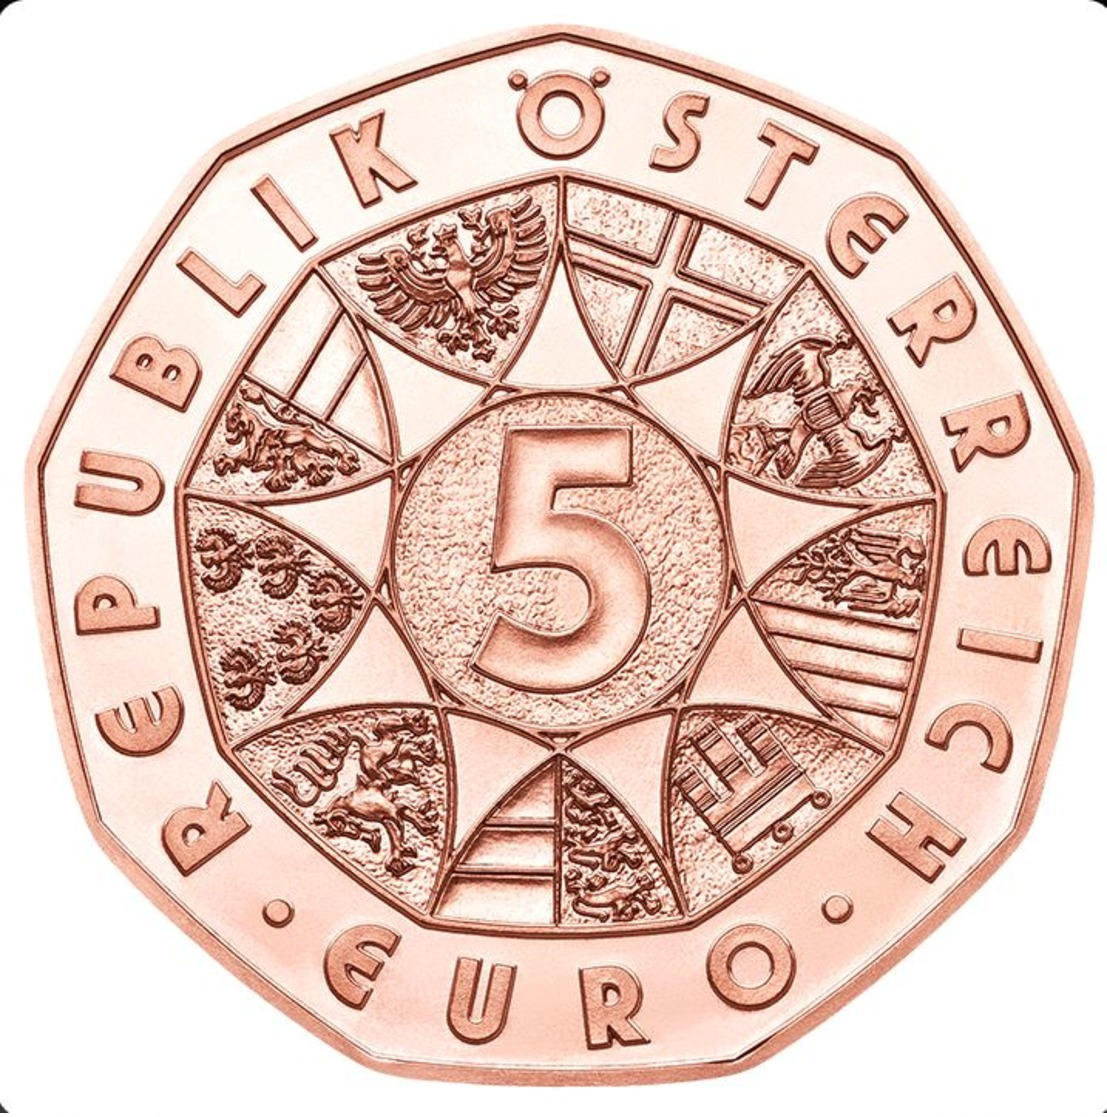 Monnaie Commémorative 5 Euro Autriche 2017, 150 Ans Donauwalzer, Neuve Du Rouleau, UNC - Autriche